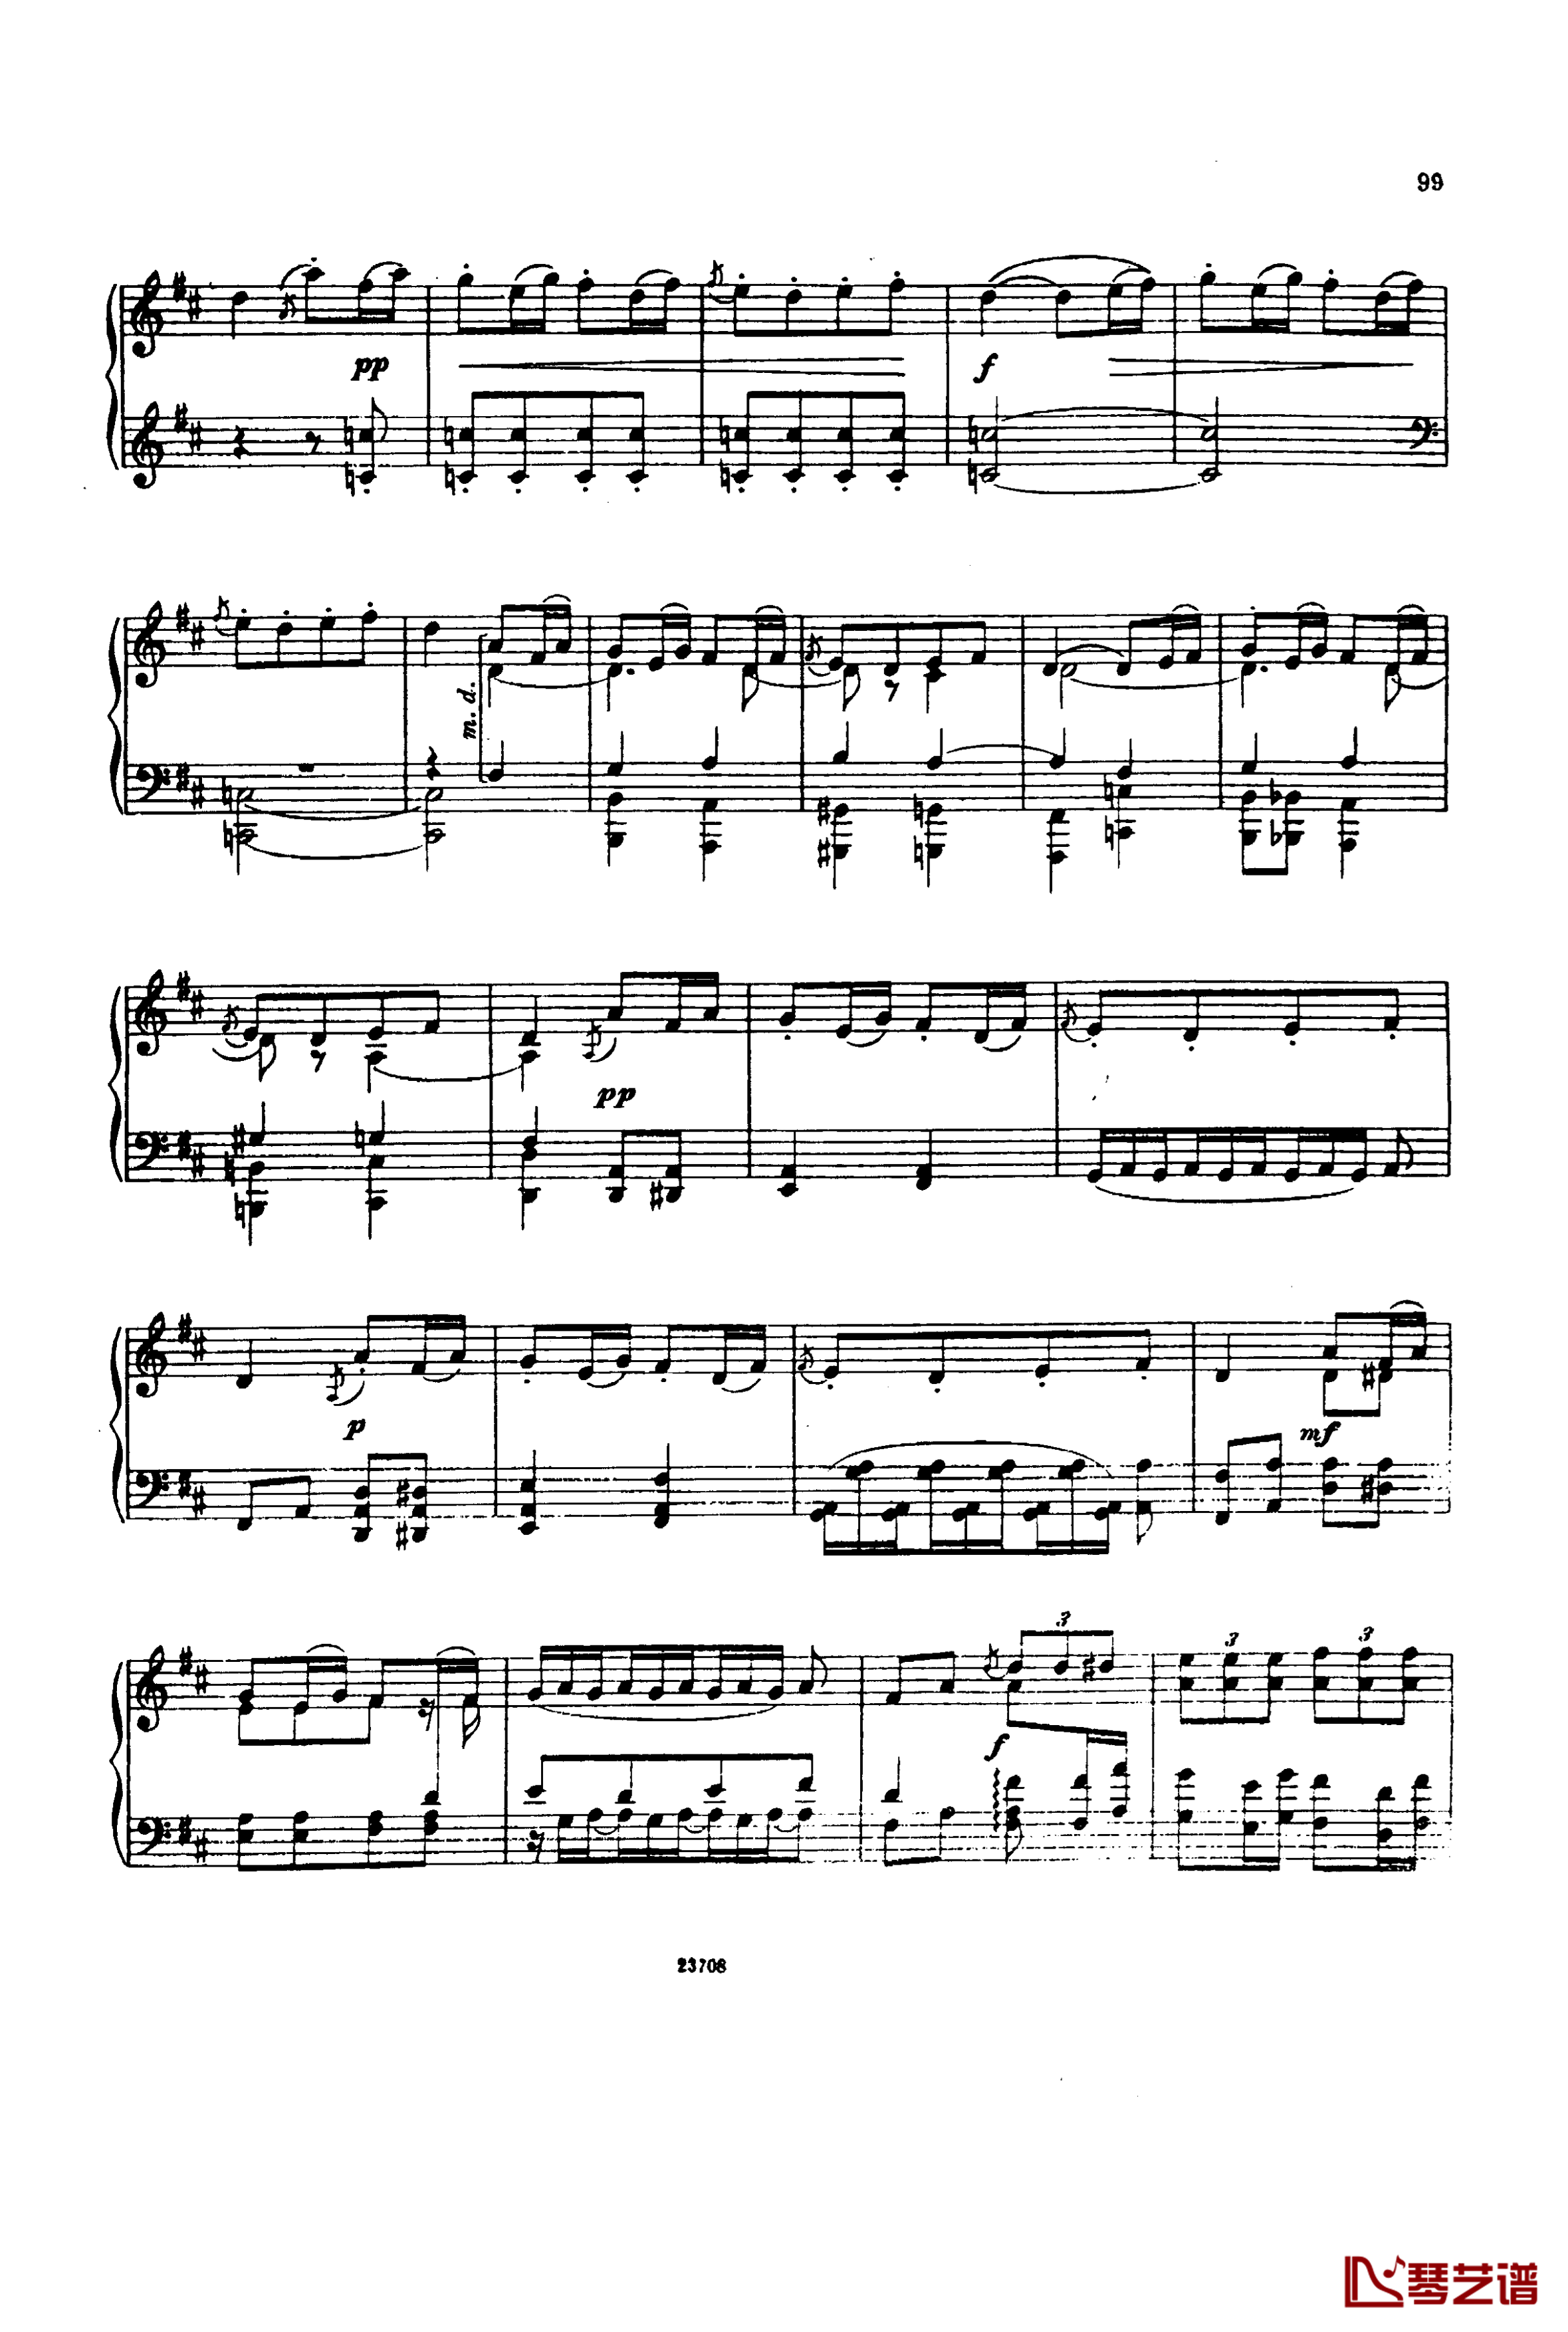 卡玛林斯卡亚幻想曲钢琴谱-格林卡13